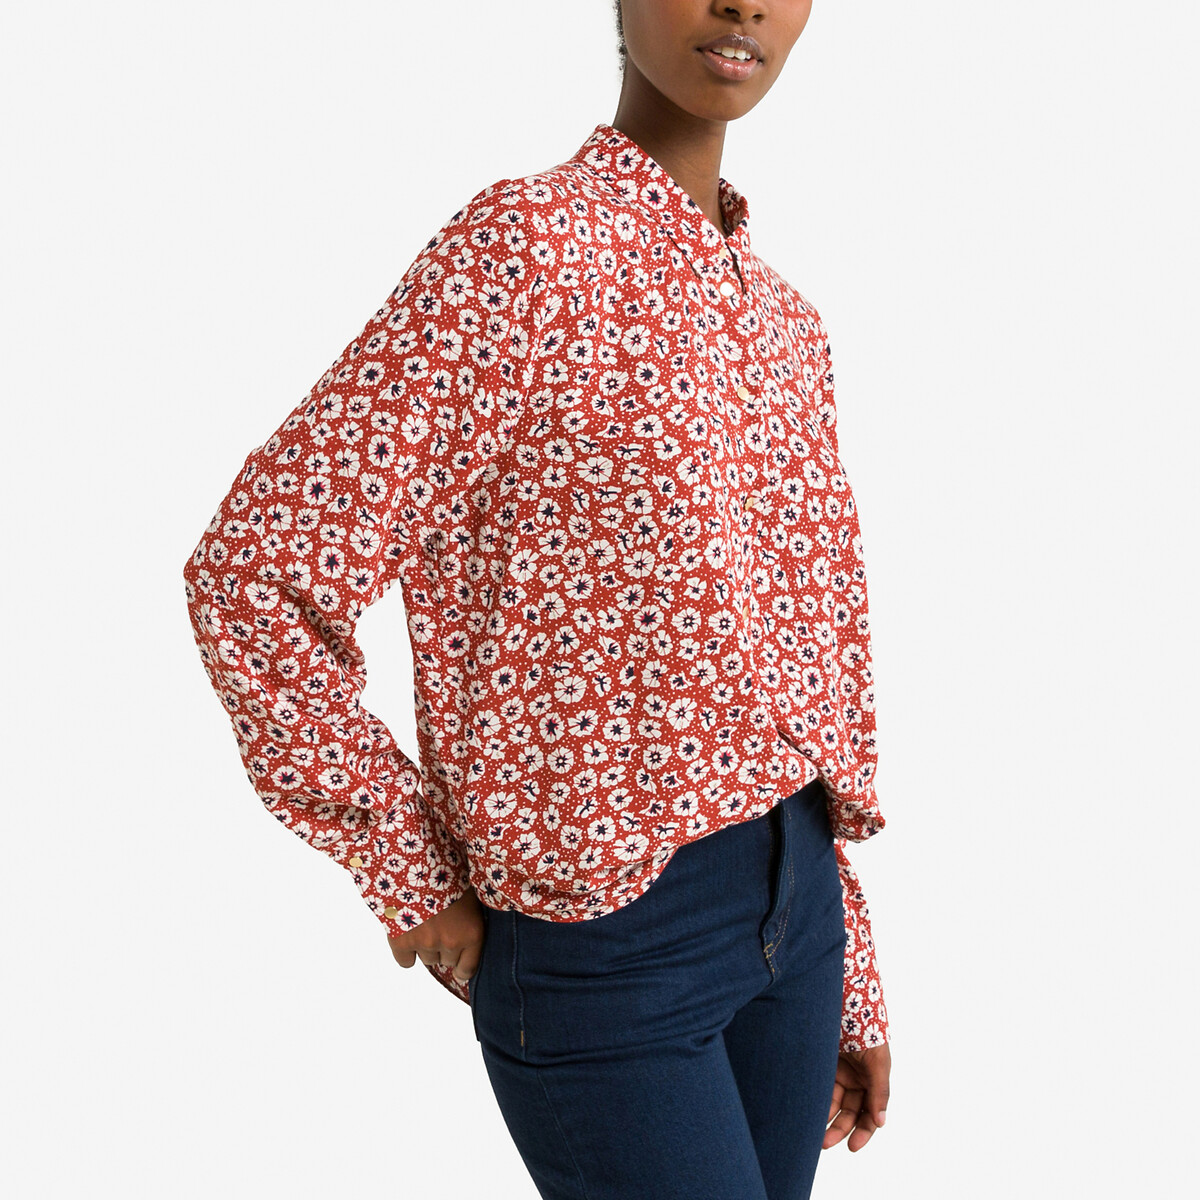 Блузка с цветочным принтом XS красный блузка из вискозы с цветочным принтом zarina 9225120320 красный 42